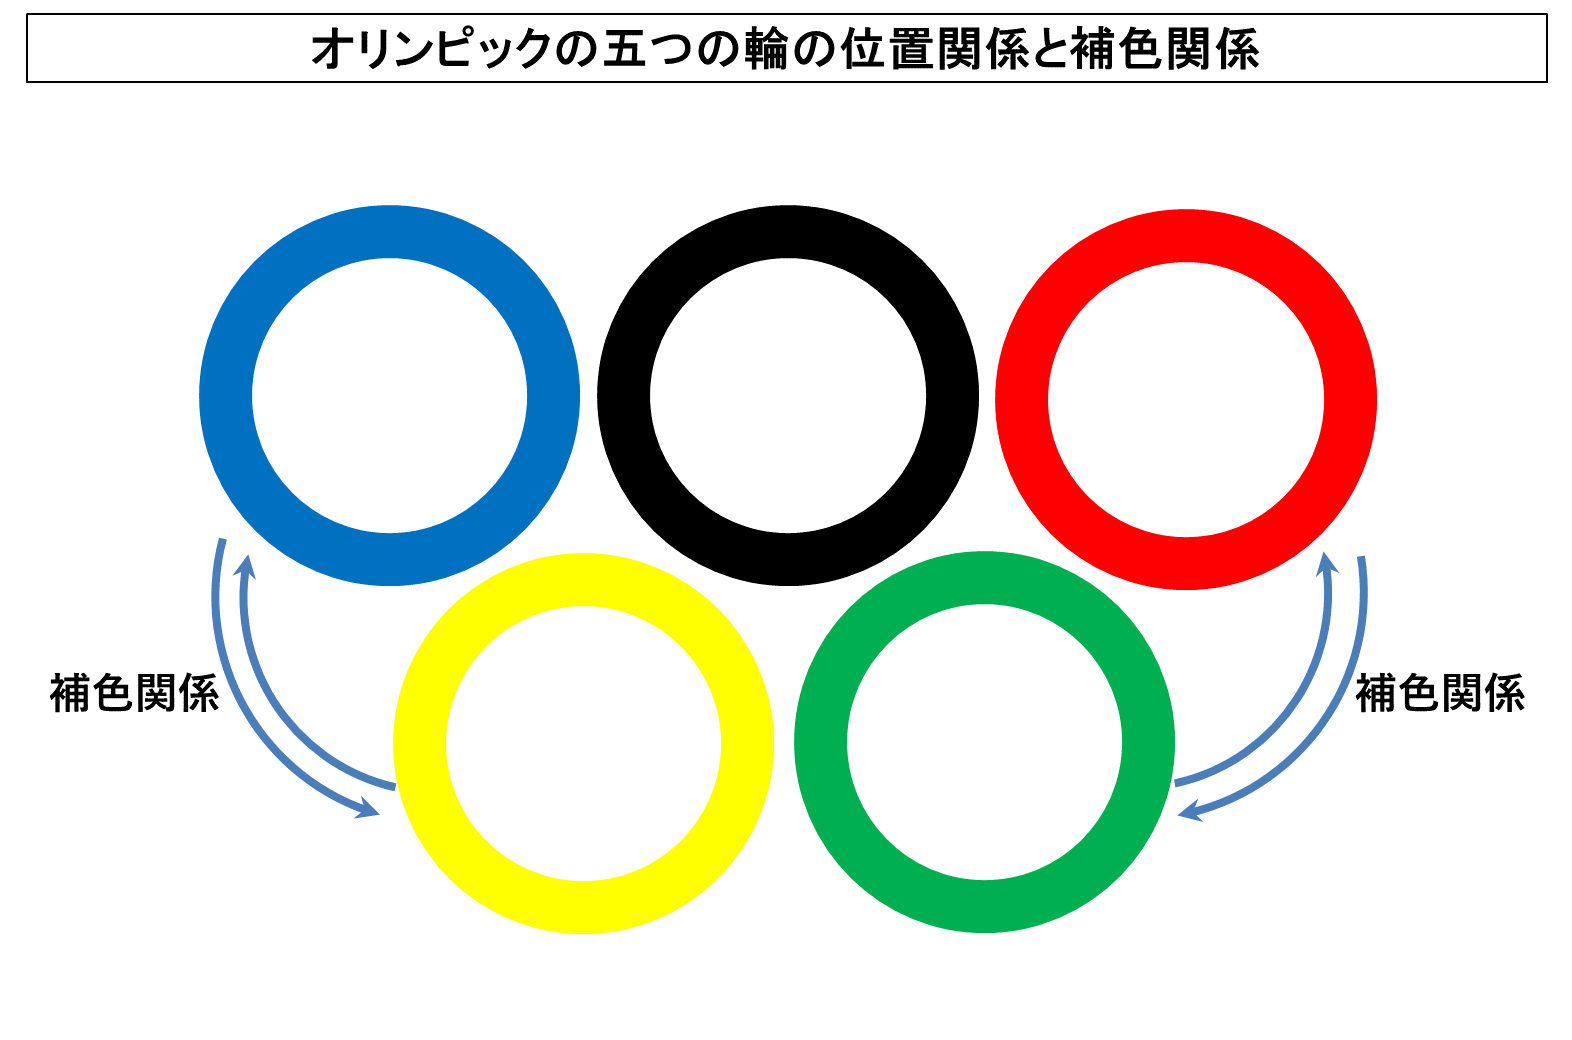 オリンピックの五つの輪が左から青 黄 黒 緑 赤の順で並ぶ理由とは 色彩科学とフランス国旗における色の配置との関連性 Tantanの雑学と哲学の小部屋